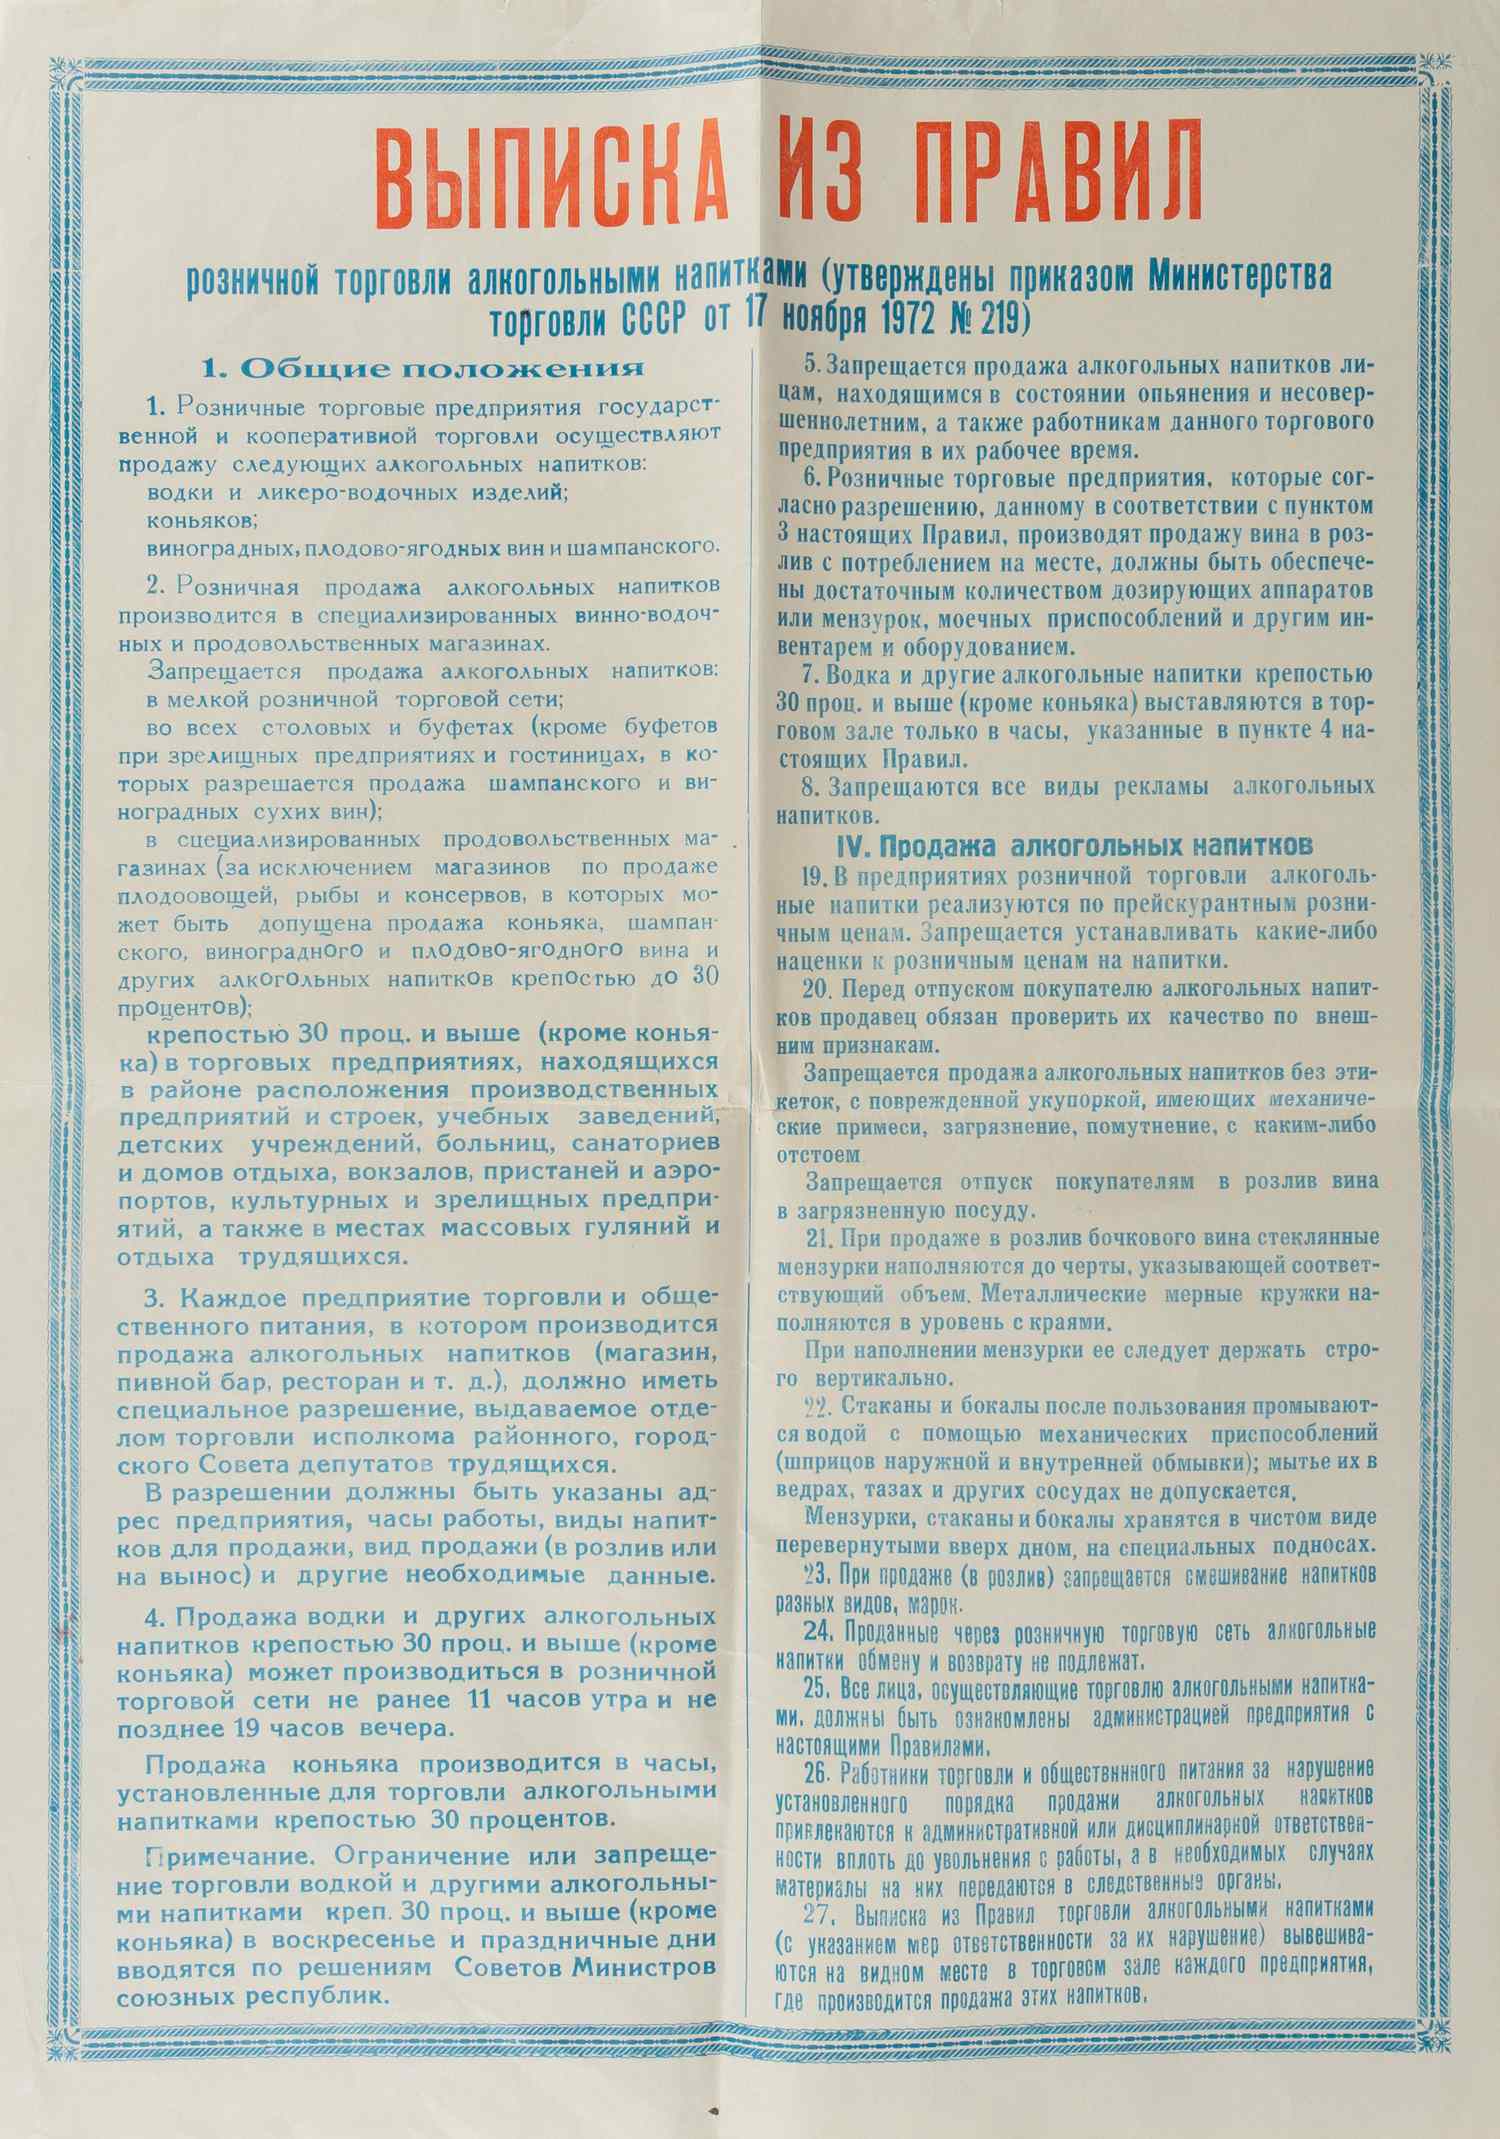 Выписка из правил розничной торговли алкогольными напитками (утверждены приказом Министерства торговли СССР от 17 ноября 1972 года). 1970-е годы.